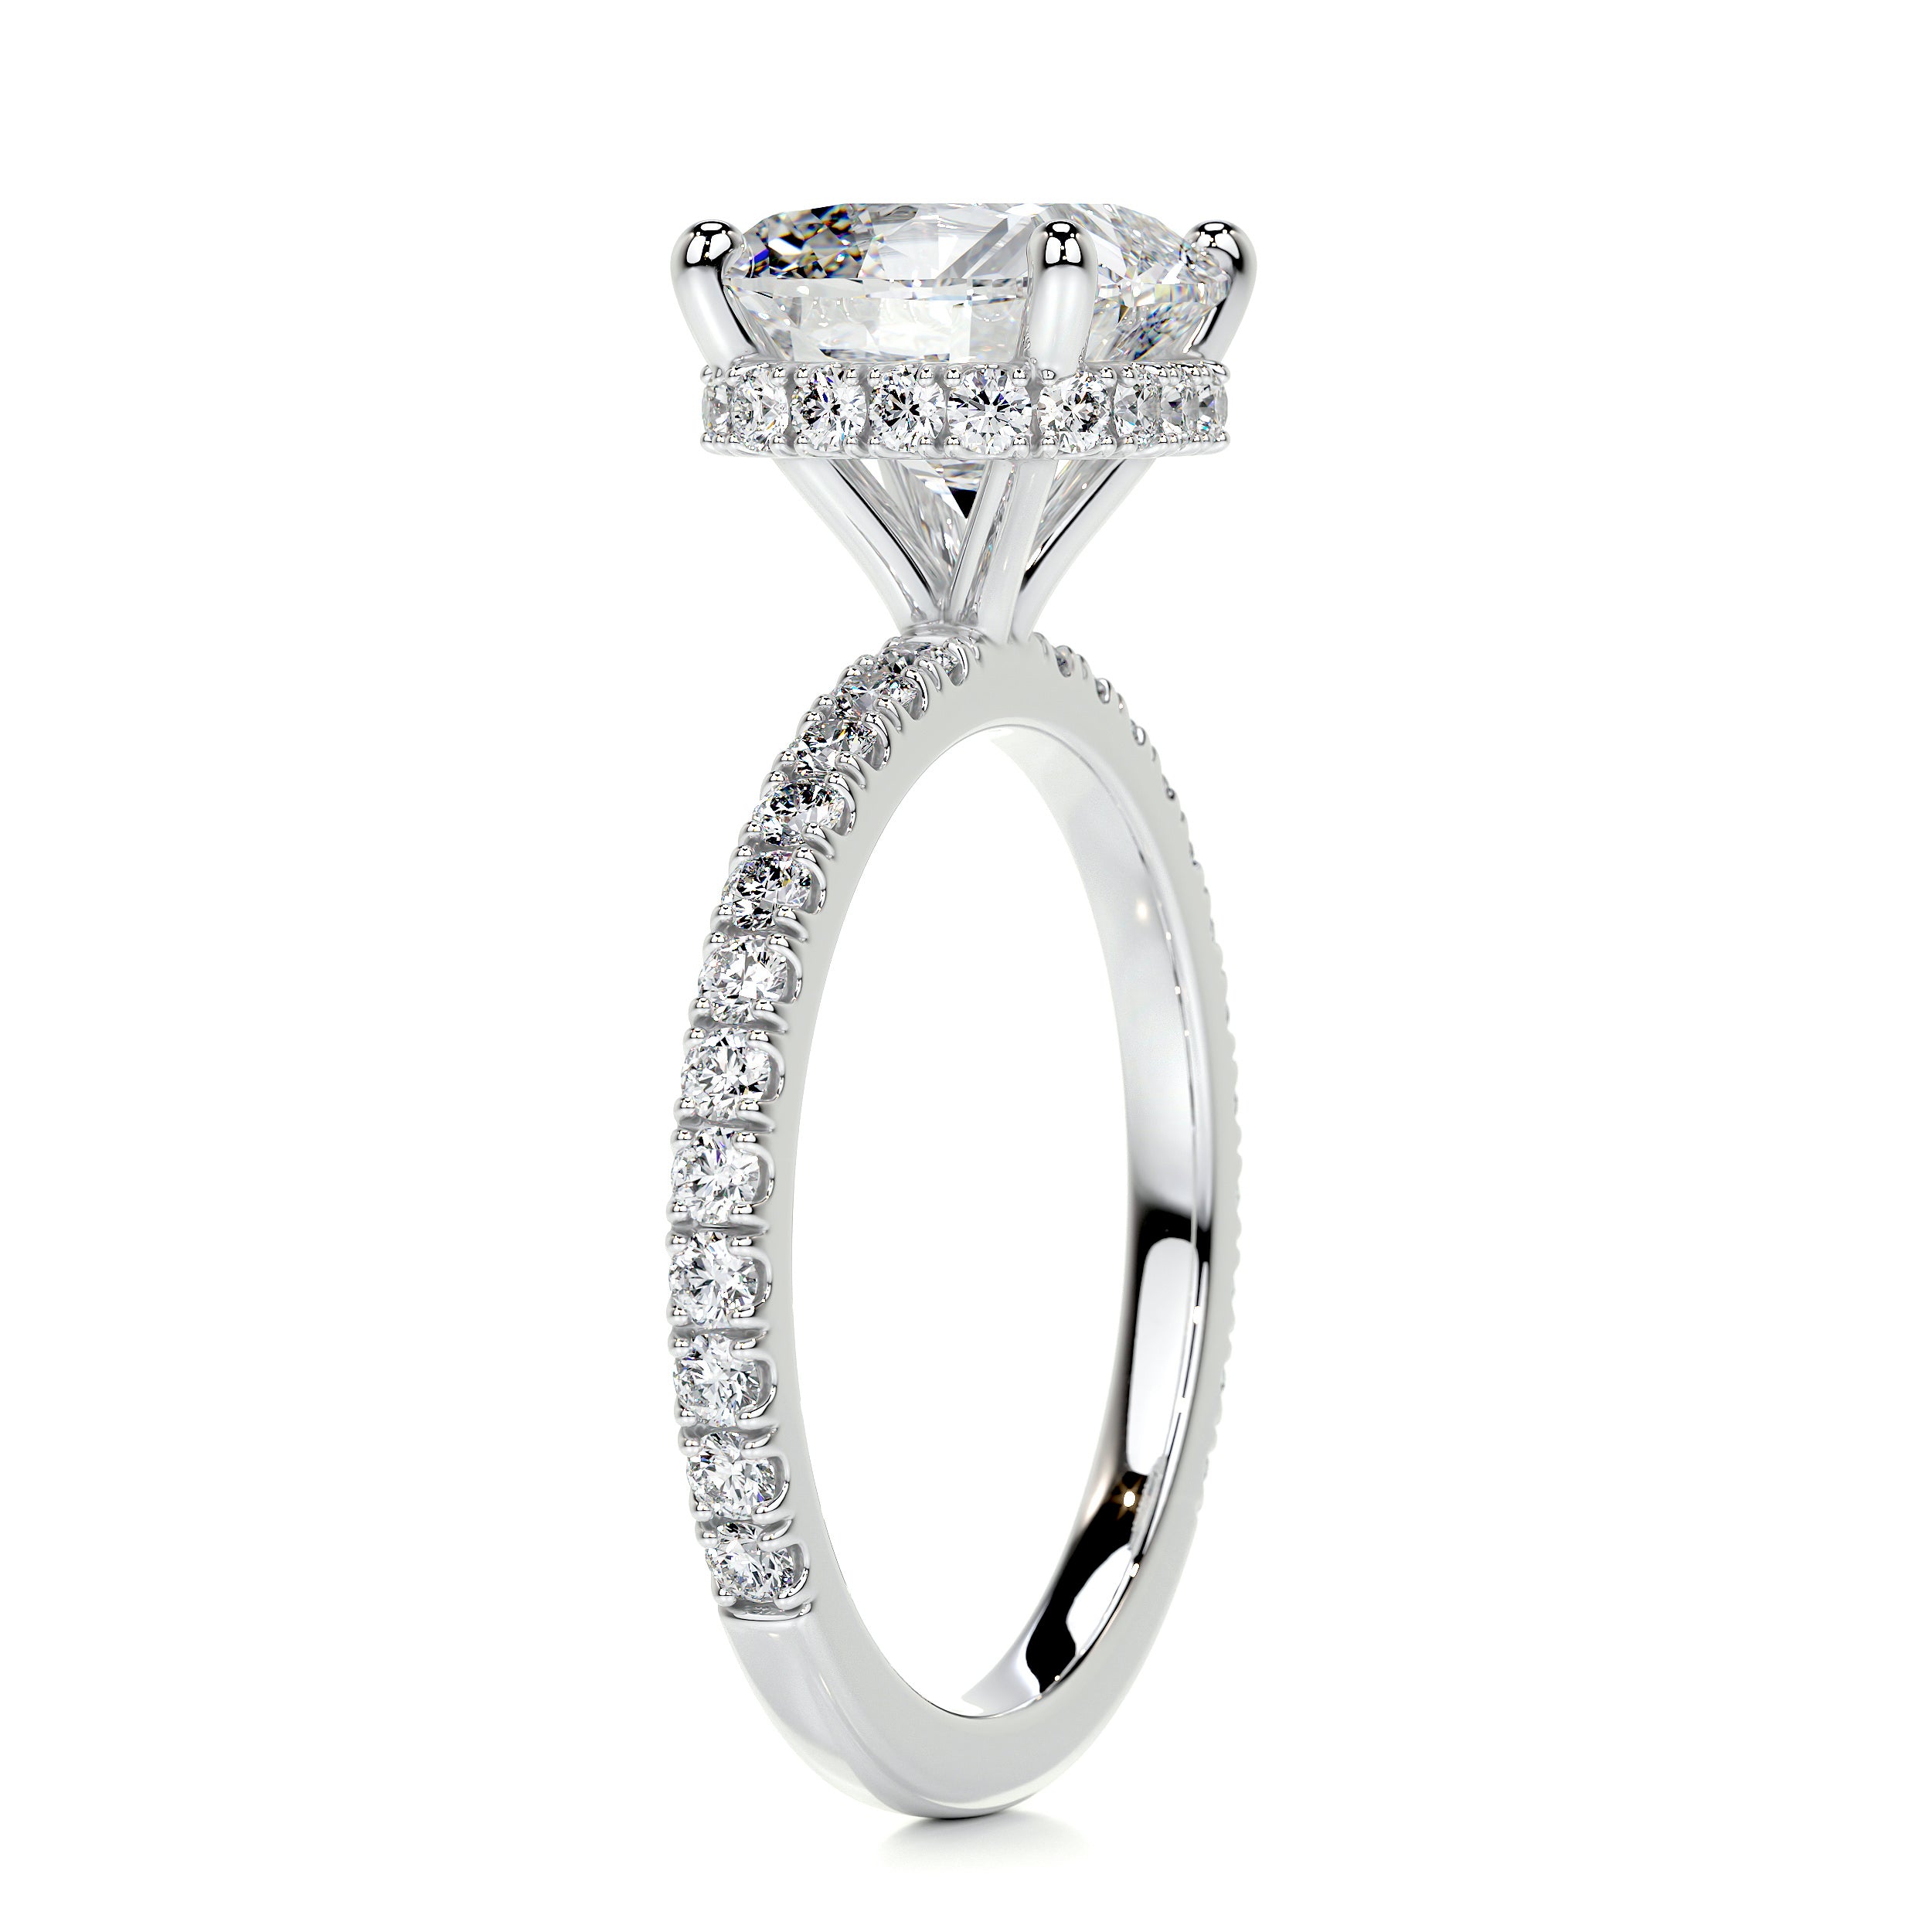 Madeline Diamond Engagement Ring -18K White Gold